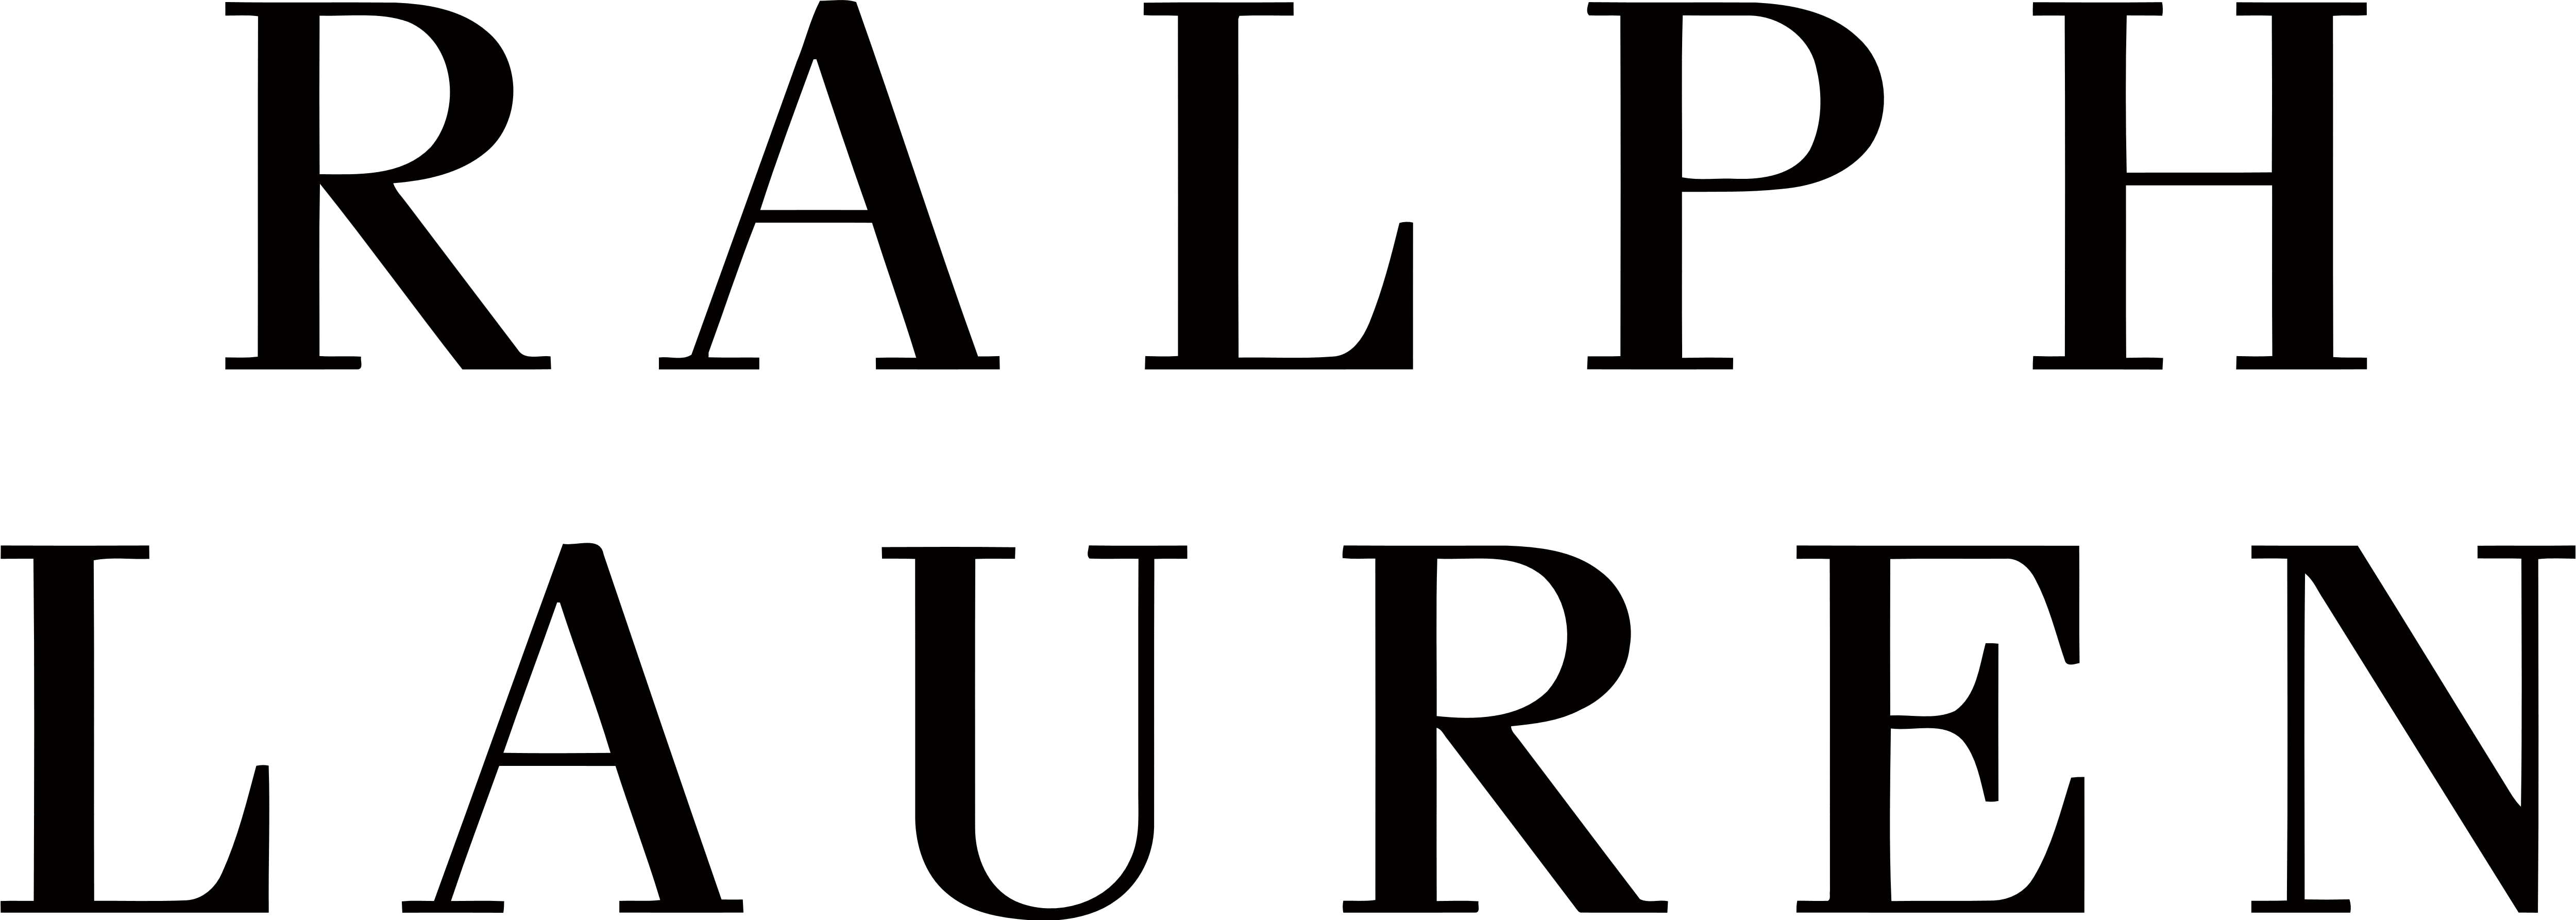 Ralph Lauren – Logos Download